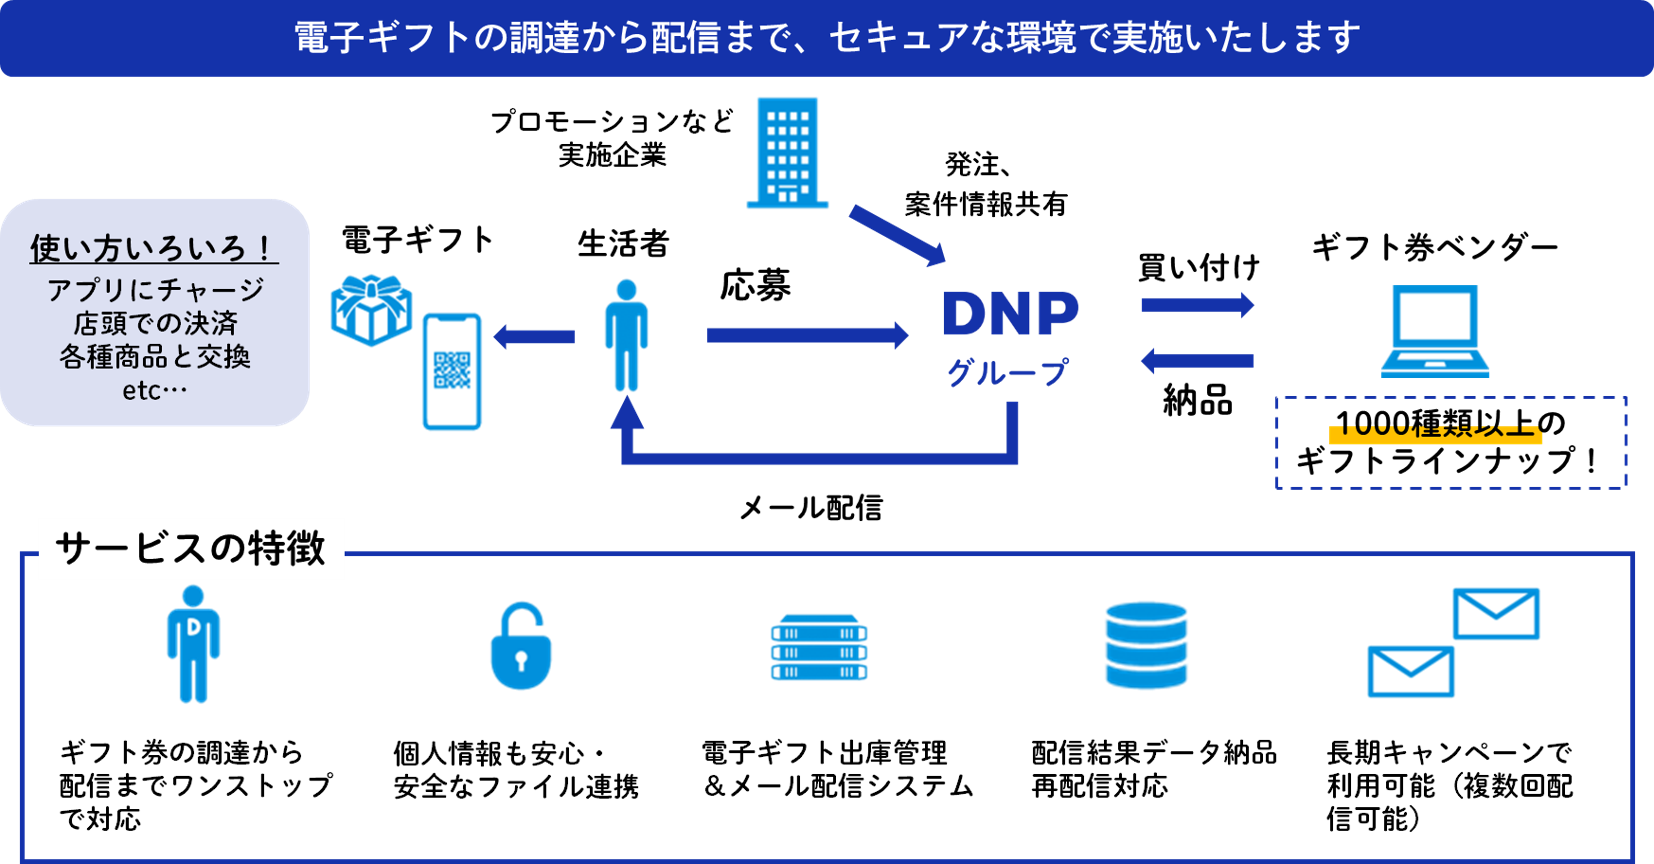 DNP電子ギフト配信サービスのフロー図及び特徴